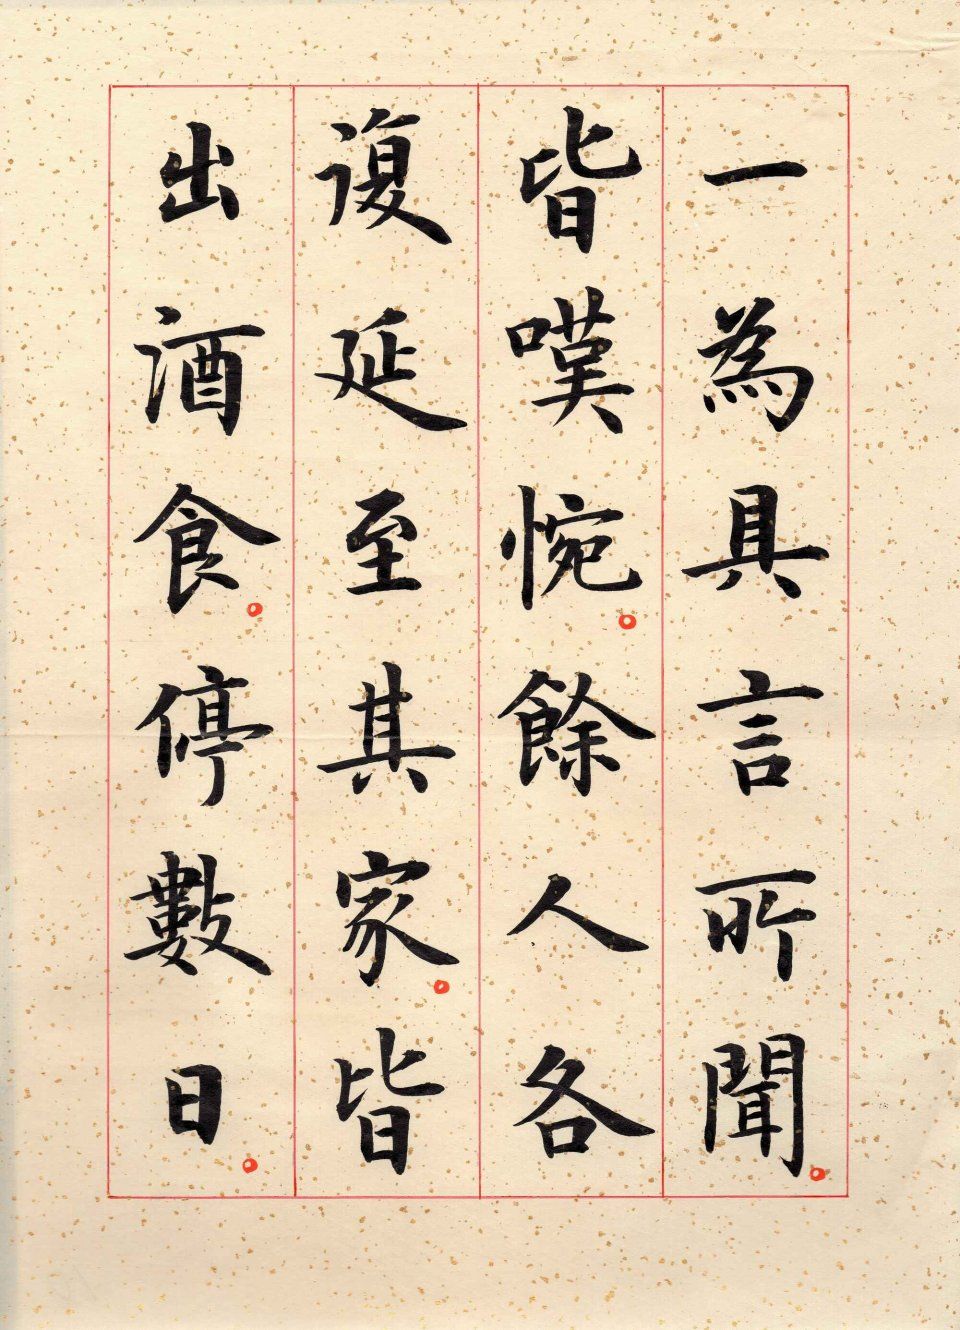 古代四大书法家欧阳询,颜真卿,柳公权和赵孟頫的字体如何区分?